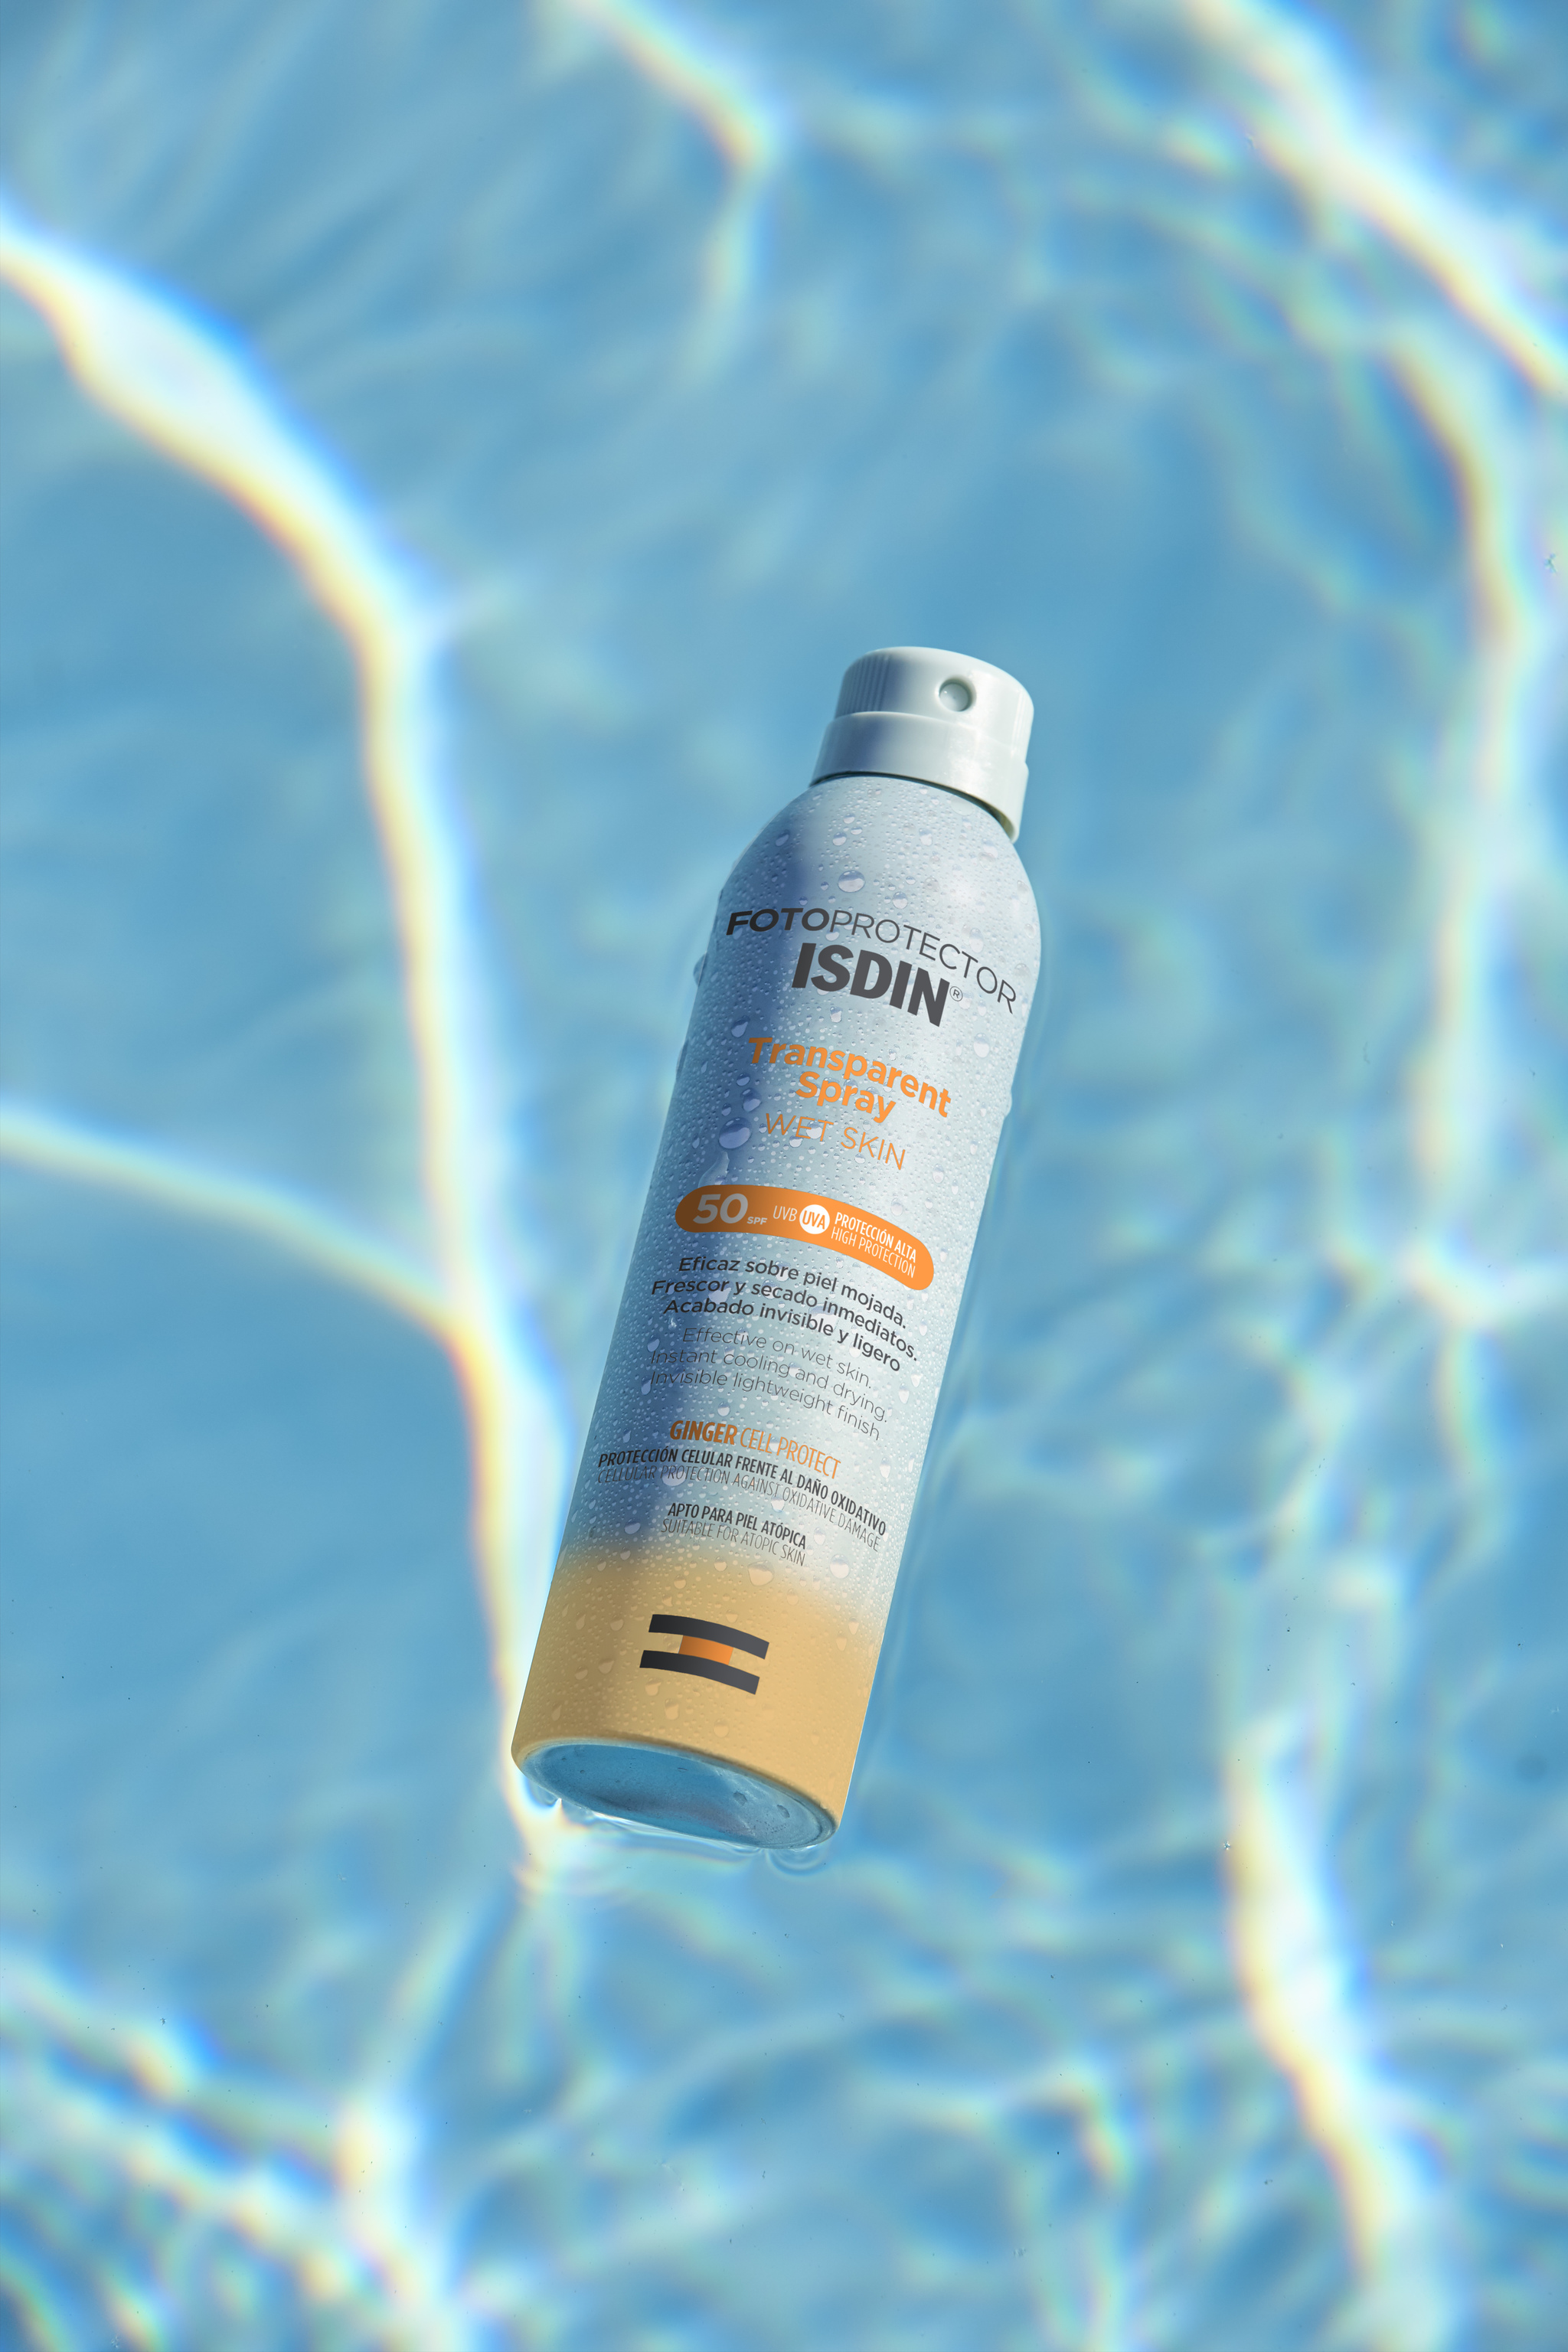 Fotoprotector ISDIN Transparent Spray WET SKIN el fotoprotector corporal invisible, fresco y ligero para la piel mojada.